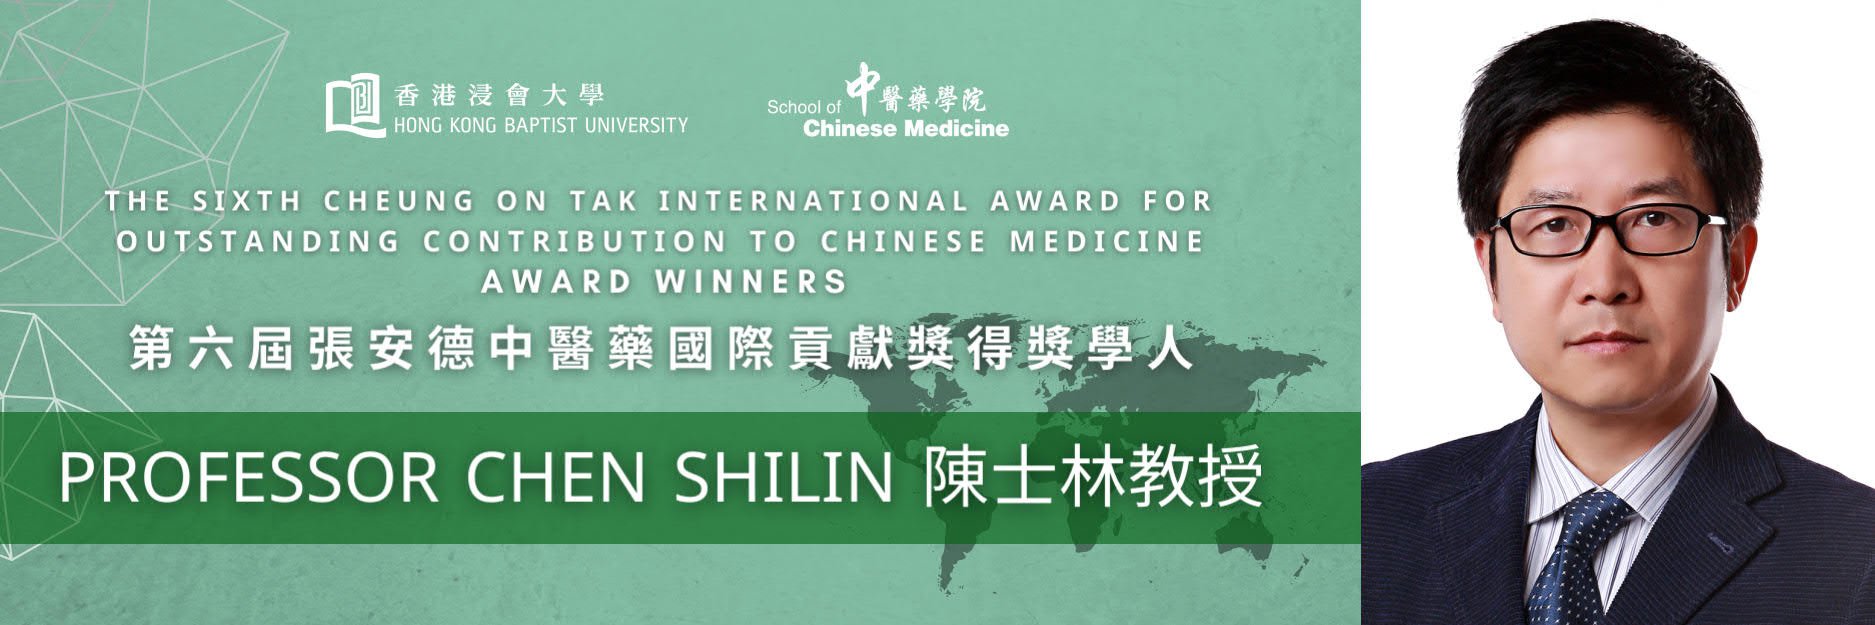 Professor Chen Shilin